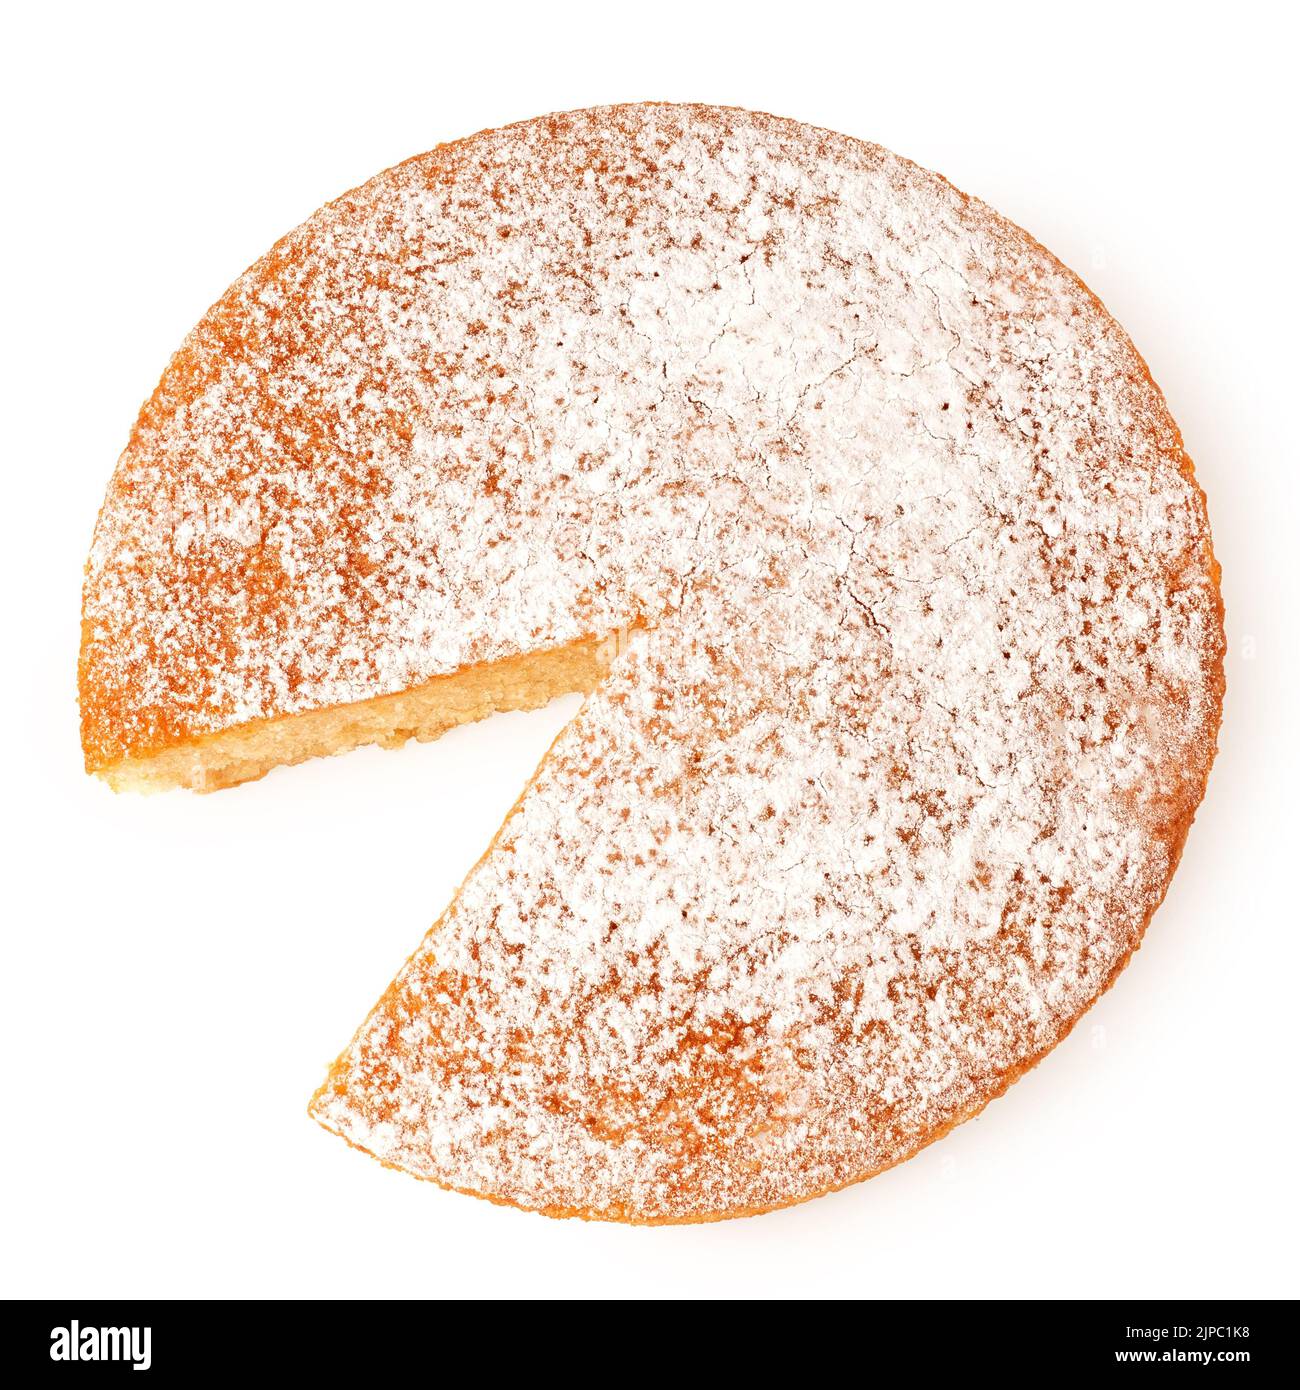 Zitronenkuchen mit Puderzucker-Belag und Keil fehlt isoliert auf weiß. Draufsicht. Stockfoto